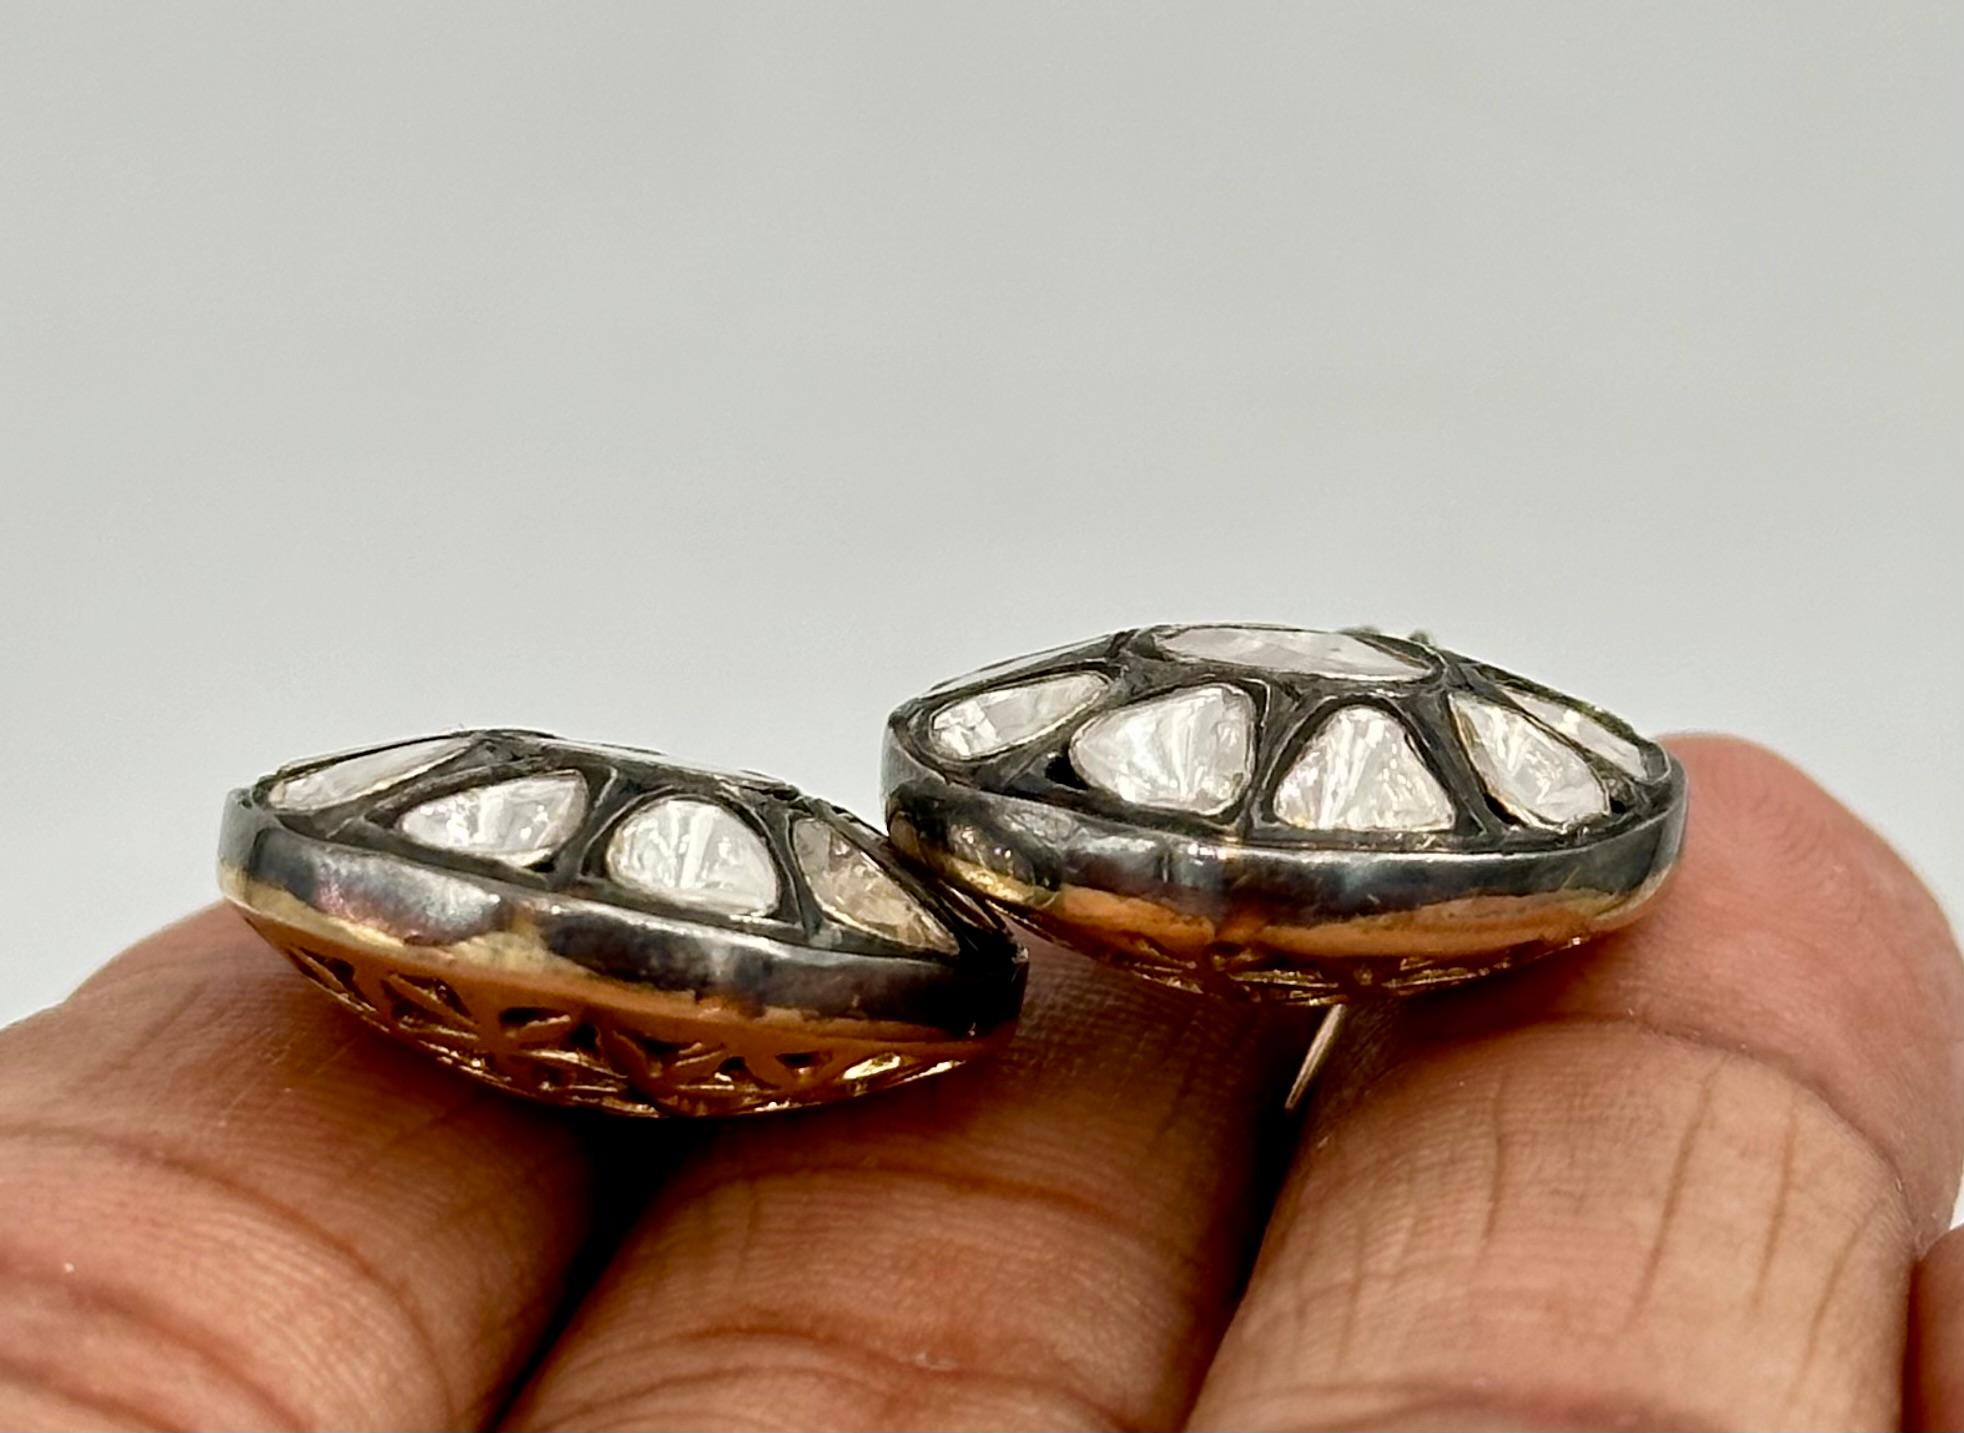 Die Retro-Stil natürlichen ungeschliffenen Diamanten Sterling Silber Gold Scheibe Draht Ohrringe besteht aus-

Diamanttyp- Natürliche ungeschliffene Diamanten und Pflasterdiamanten
Diamantfarbe - Weiß
Gewicht der Diamanten - 4,70cts 

Metall -